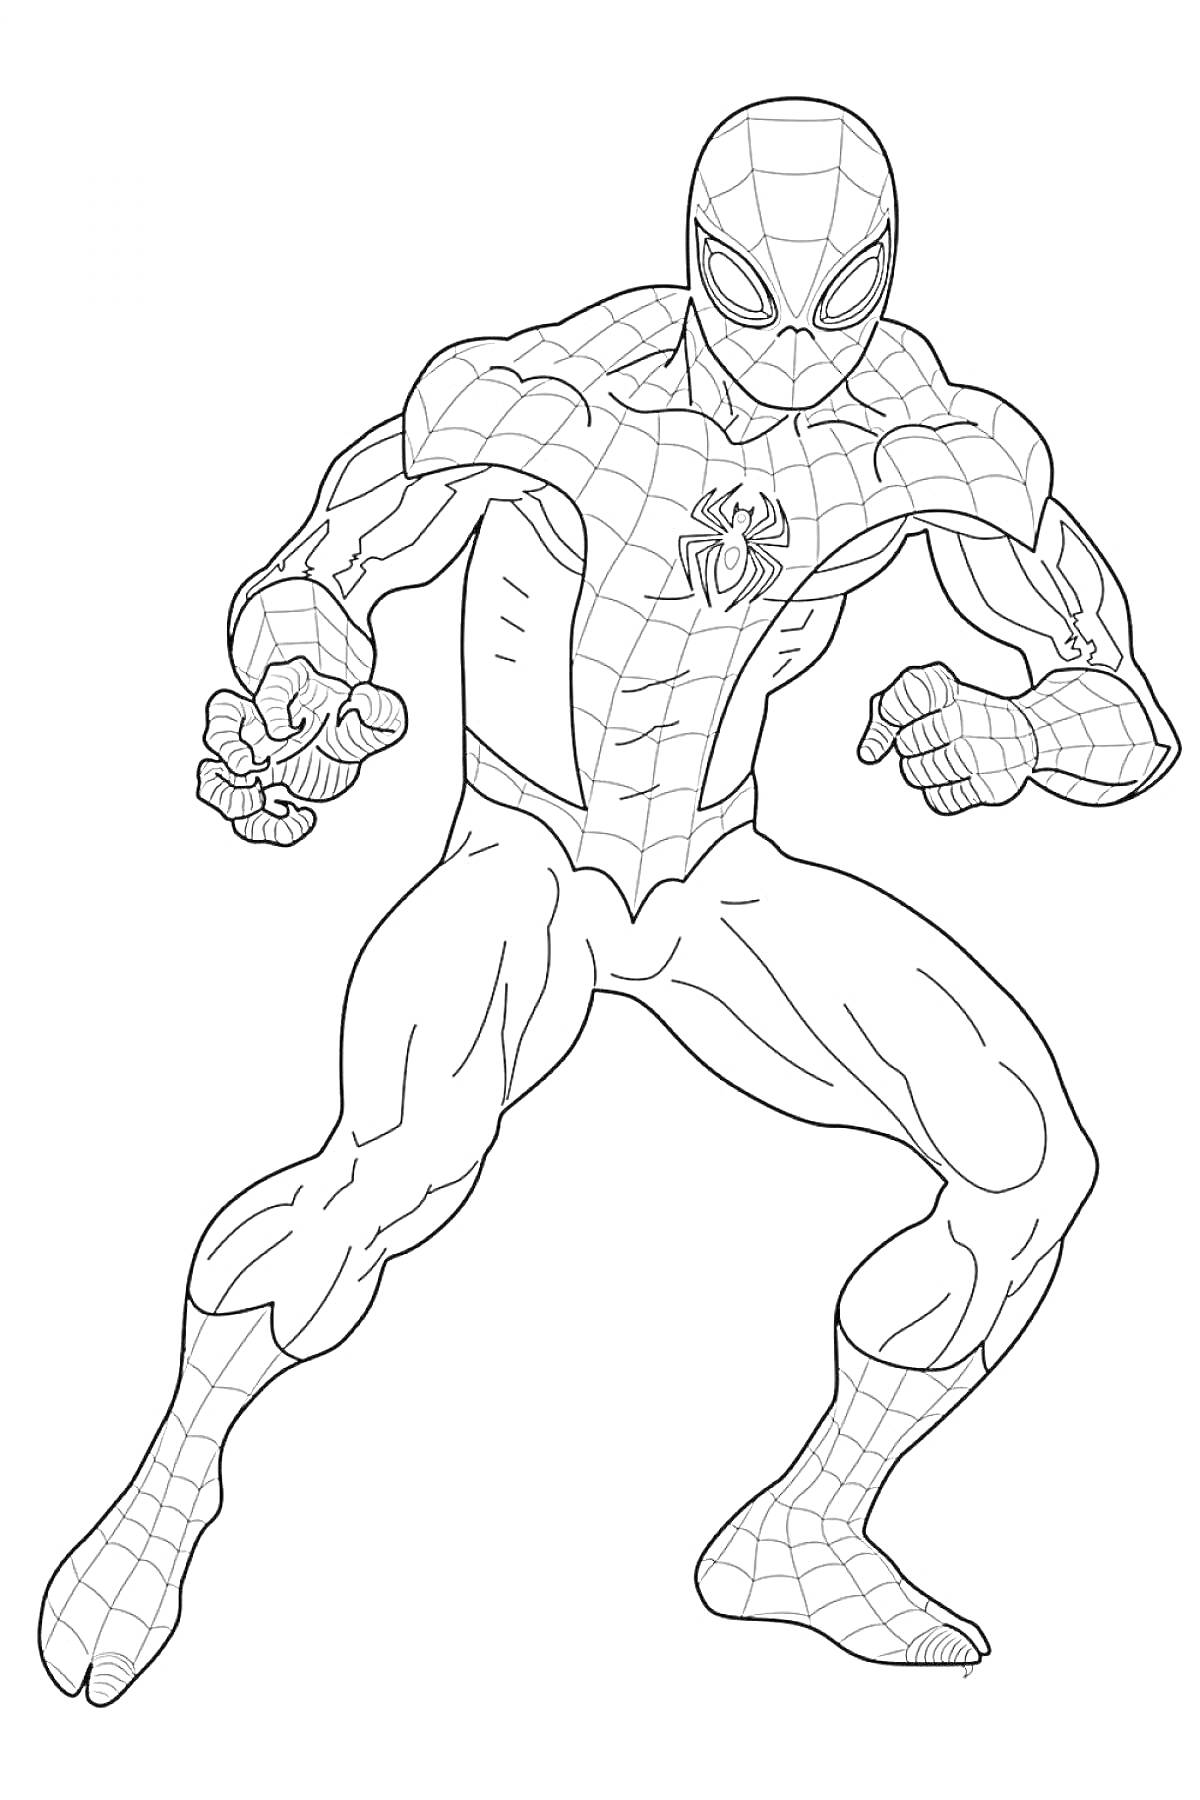 Раскраска Человек-паук в боевой стойке с паутиной на костюме